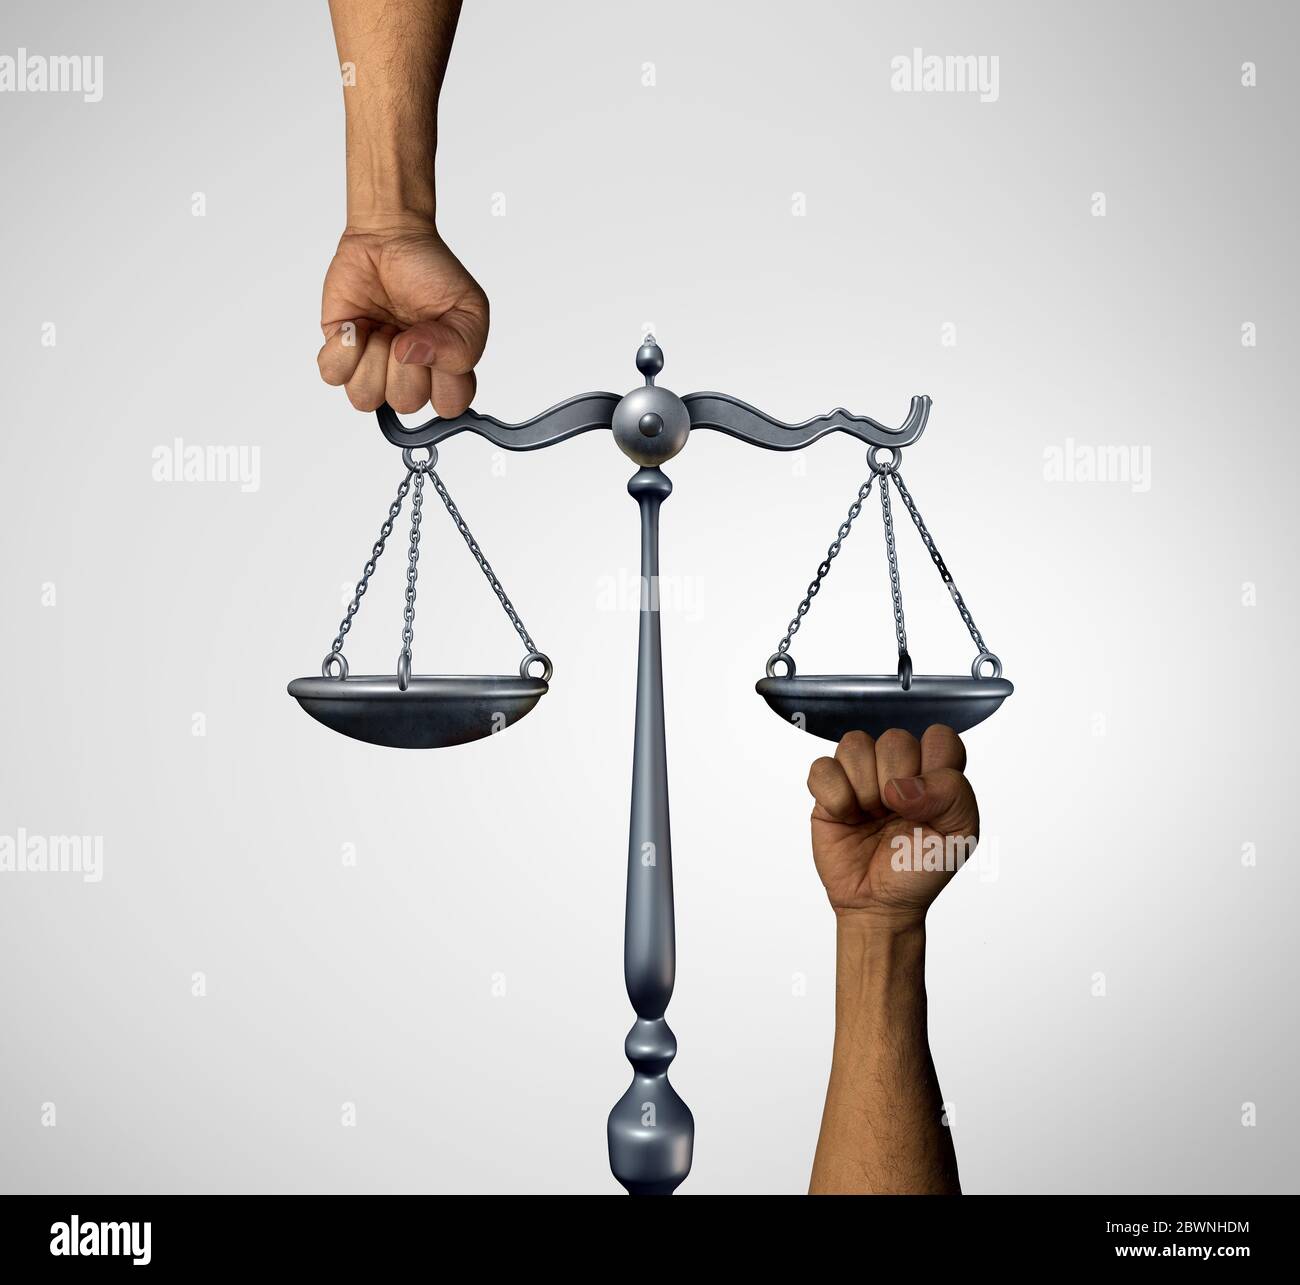 Justice sociale égale et droit à l'égalité dans la société, des personnes diverses qui détiennent l'équilibre à l'échelle juridique comme une législation sur la population. Banque D'Images